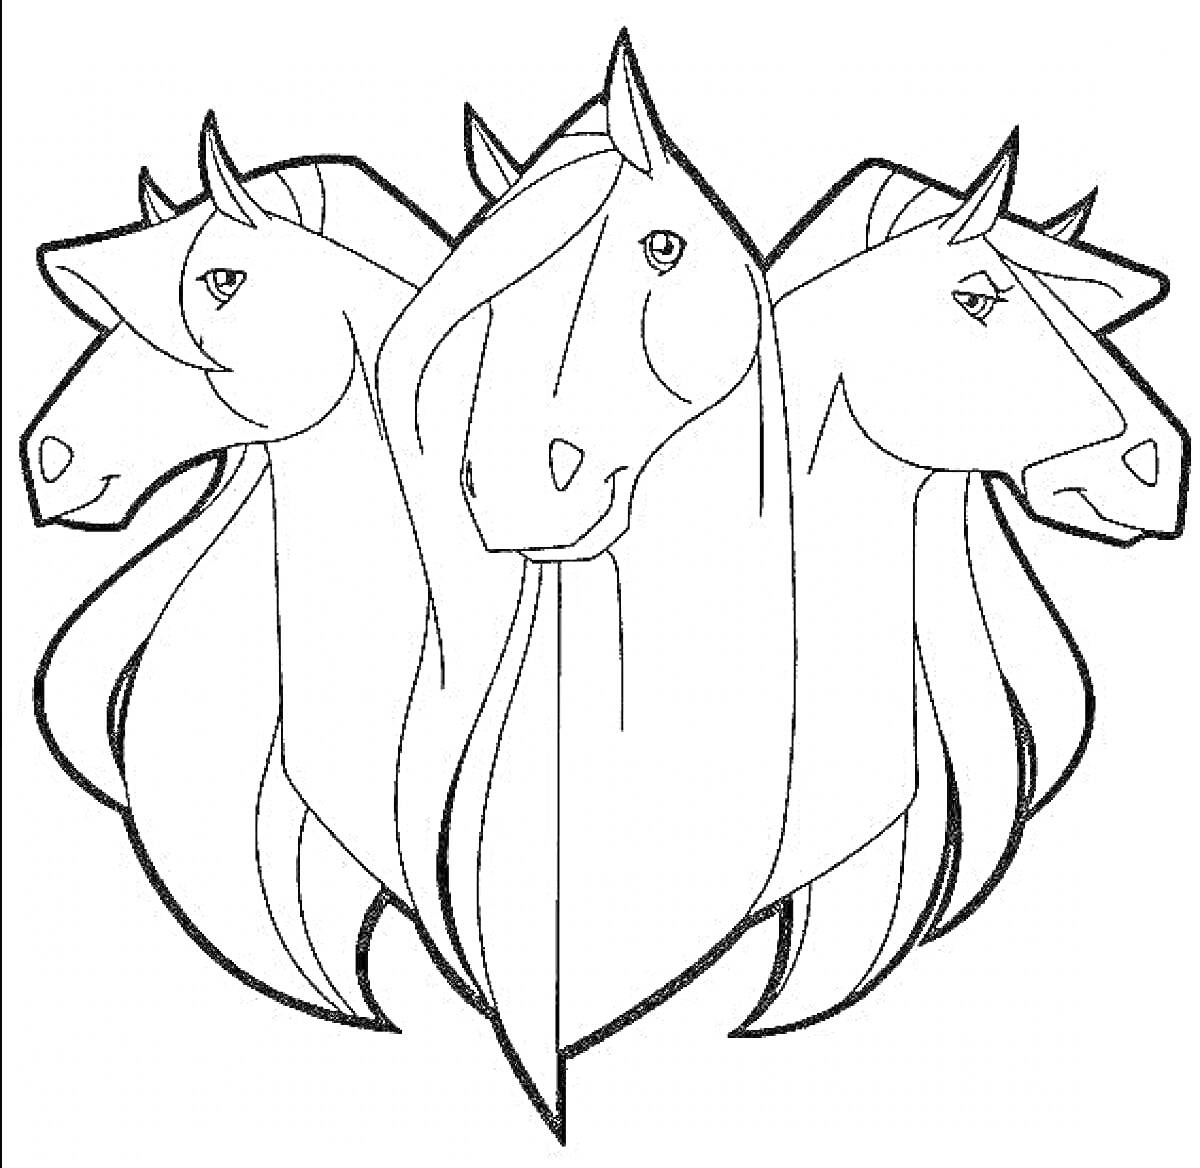 Раскраска три белых коня, три головы лошадей впереди, манеж из грив по бокам